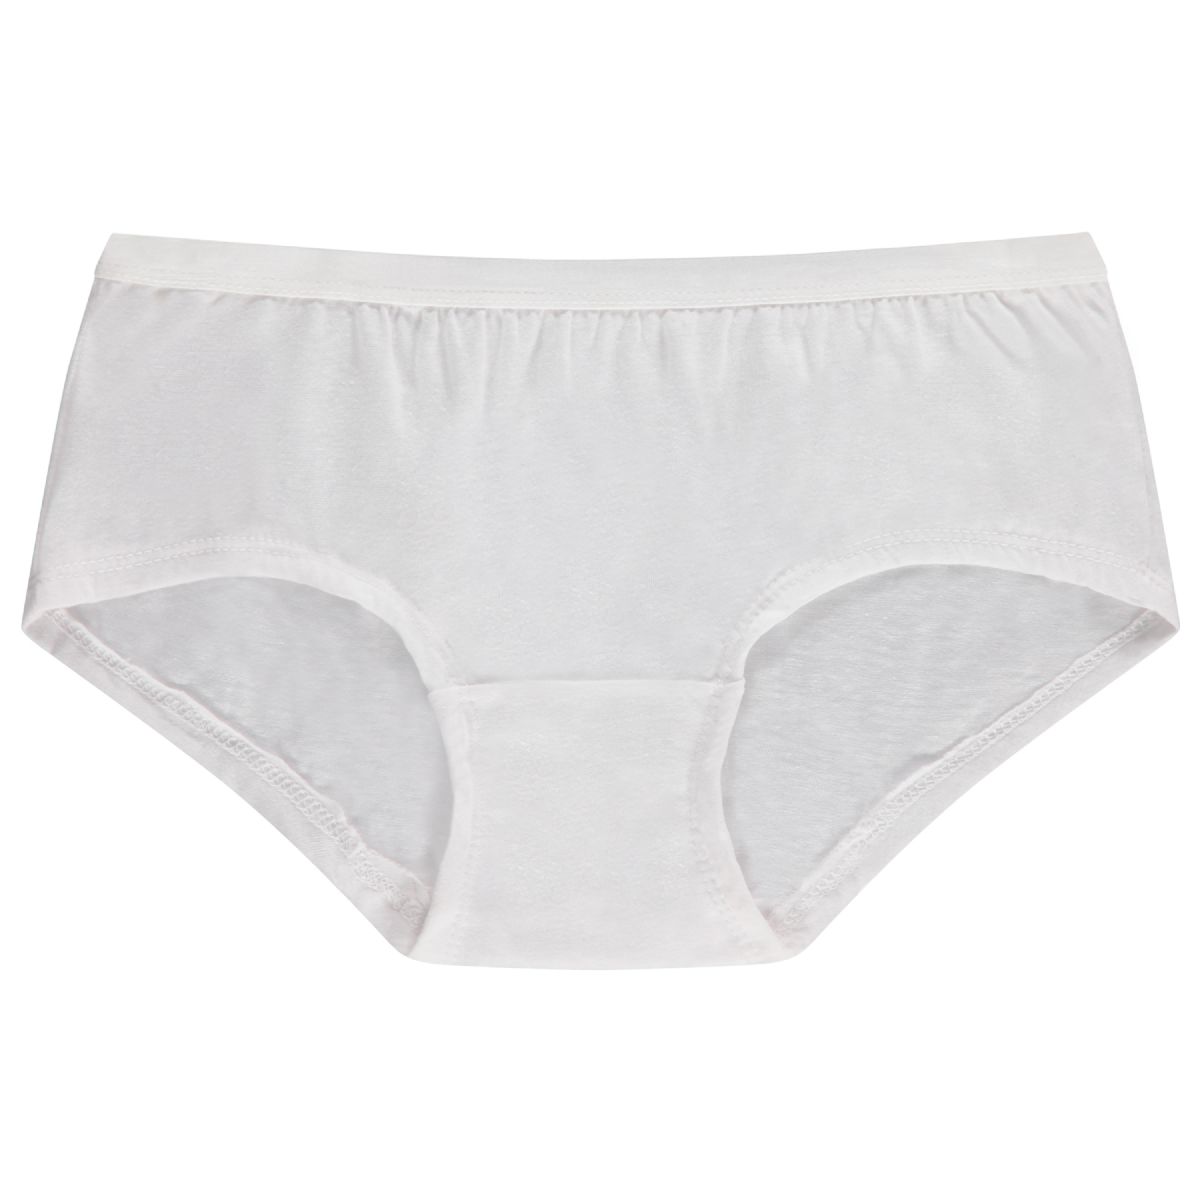 9 Pack of Womens Cotton Underwear Panty Briefs in Bulk, 95% Cotton